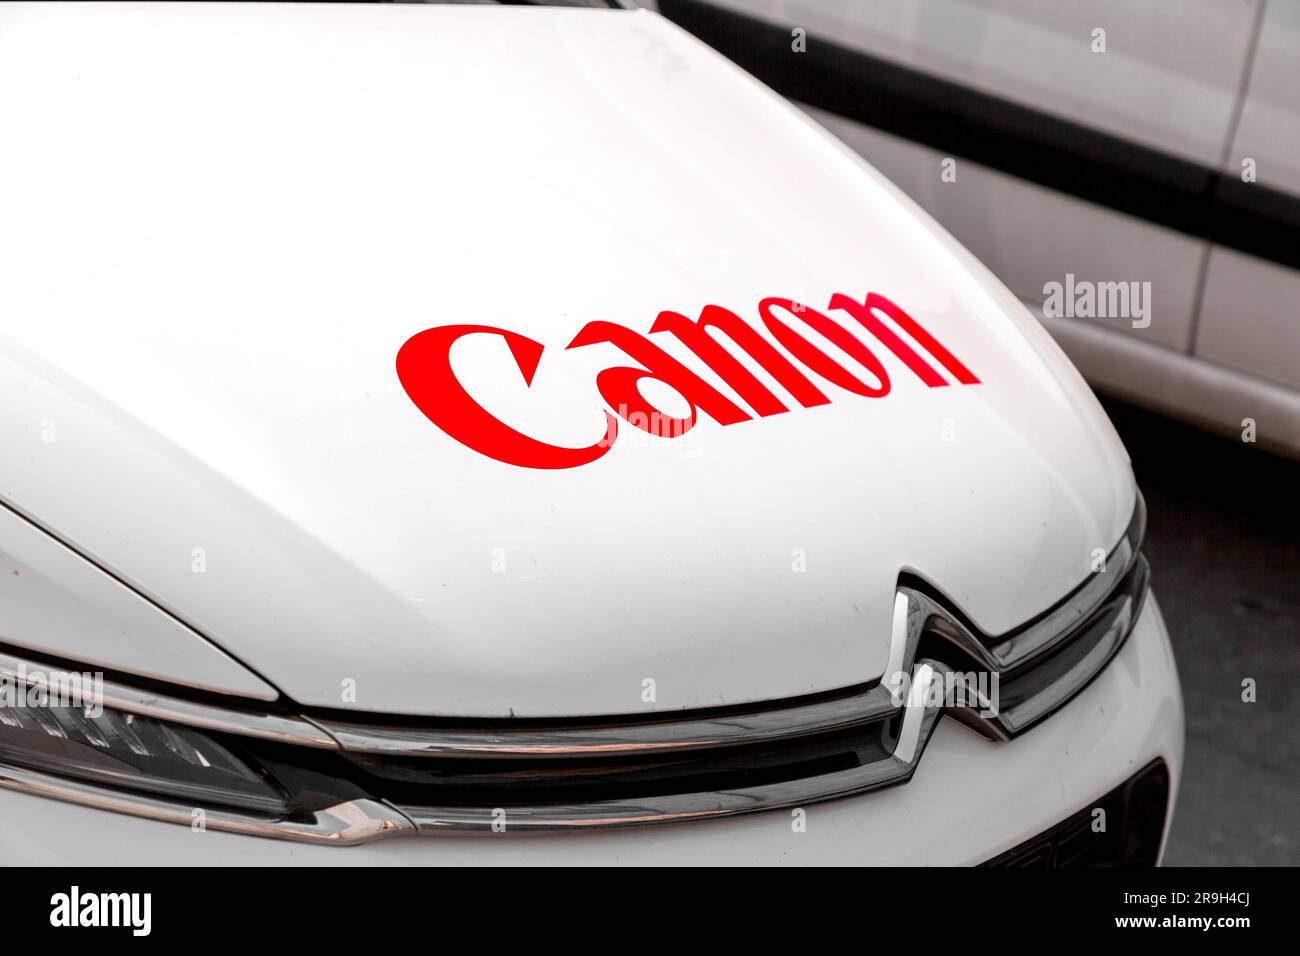 Ginevra, Svizzera - 25 marzo 2022: Logo del marchio Canon sull'auto di servizio dell'azienda a Ginevra, Svizzera. Foto Stock